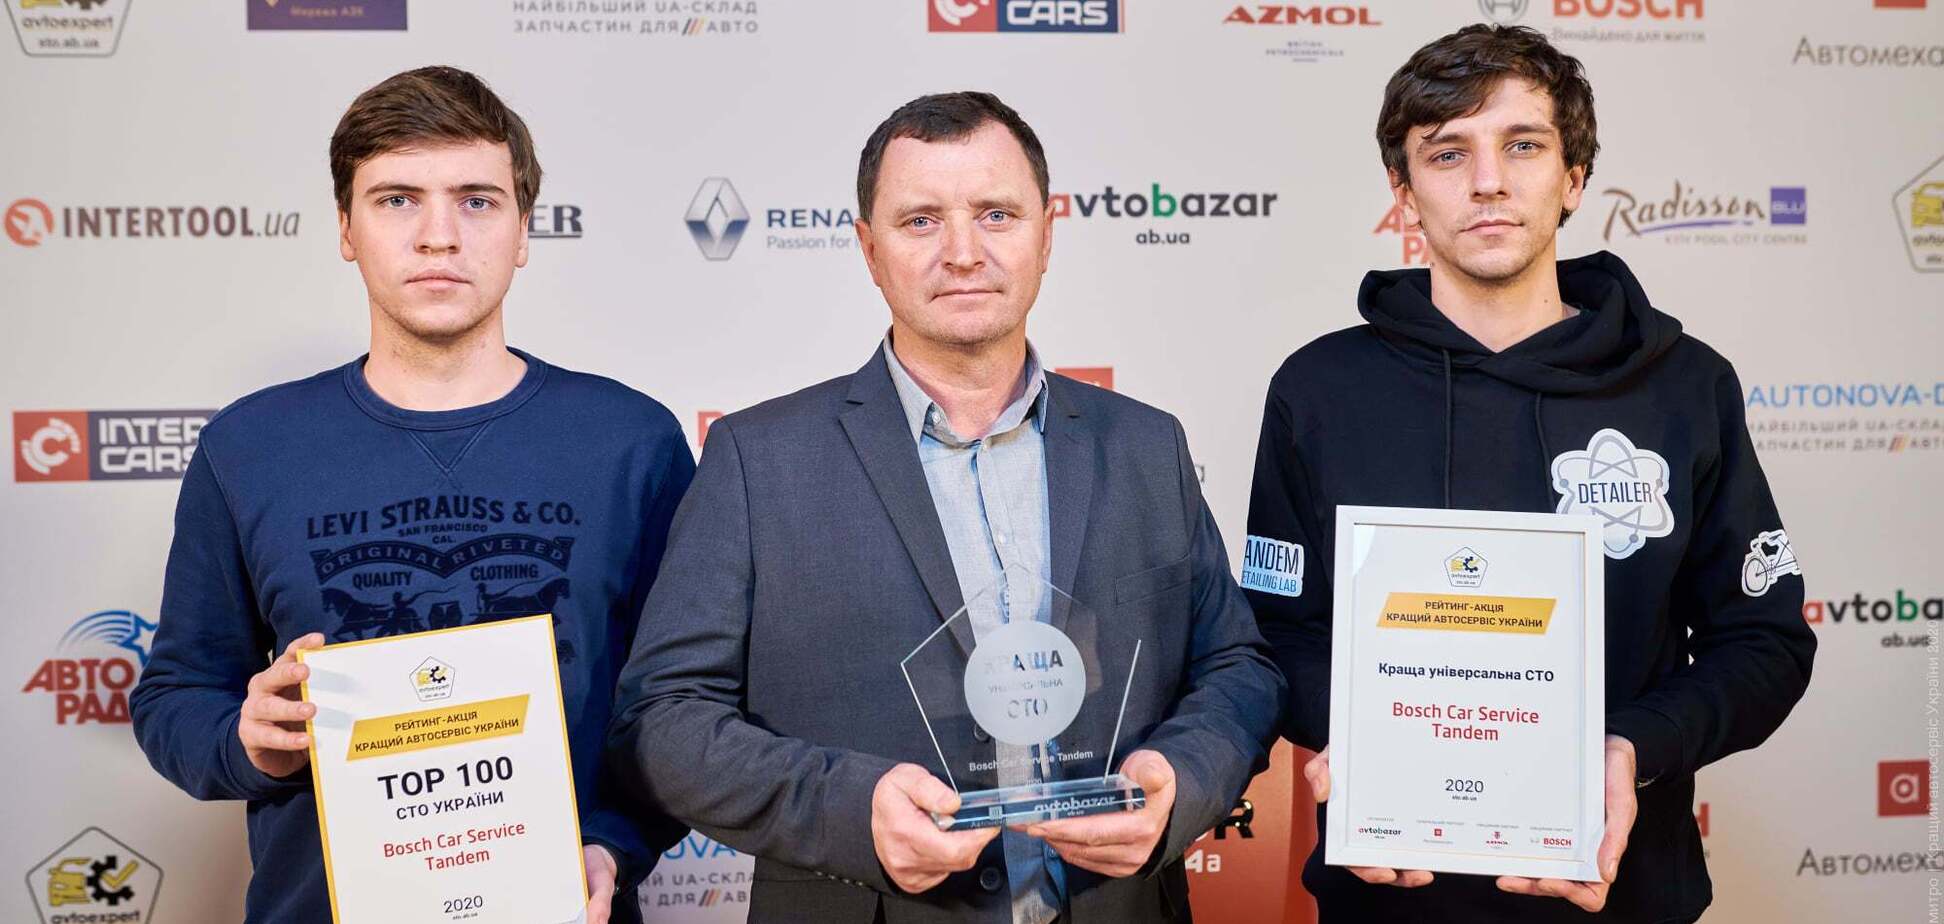 СТО Bosch Service получили награды конкурса 'Лучший автосервис Украина 2020'